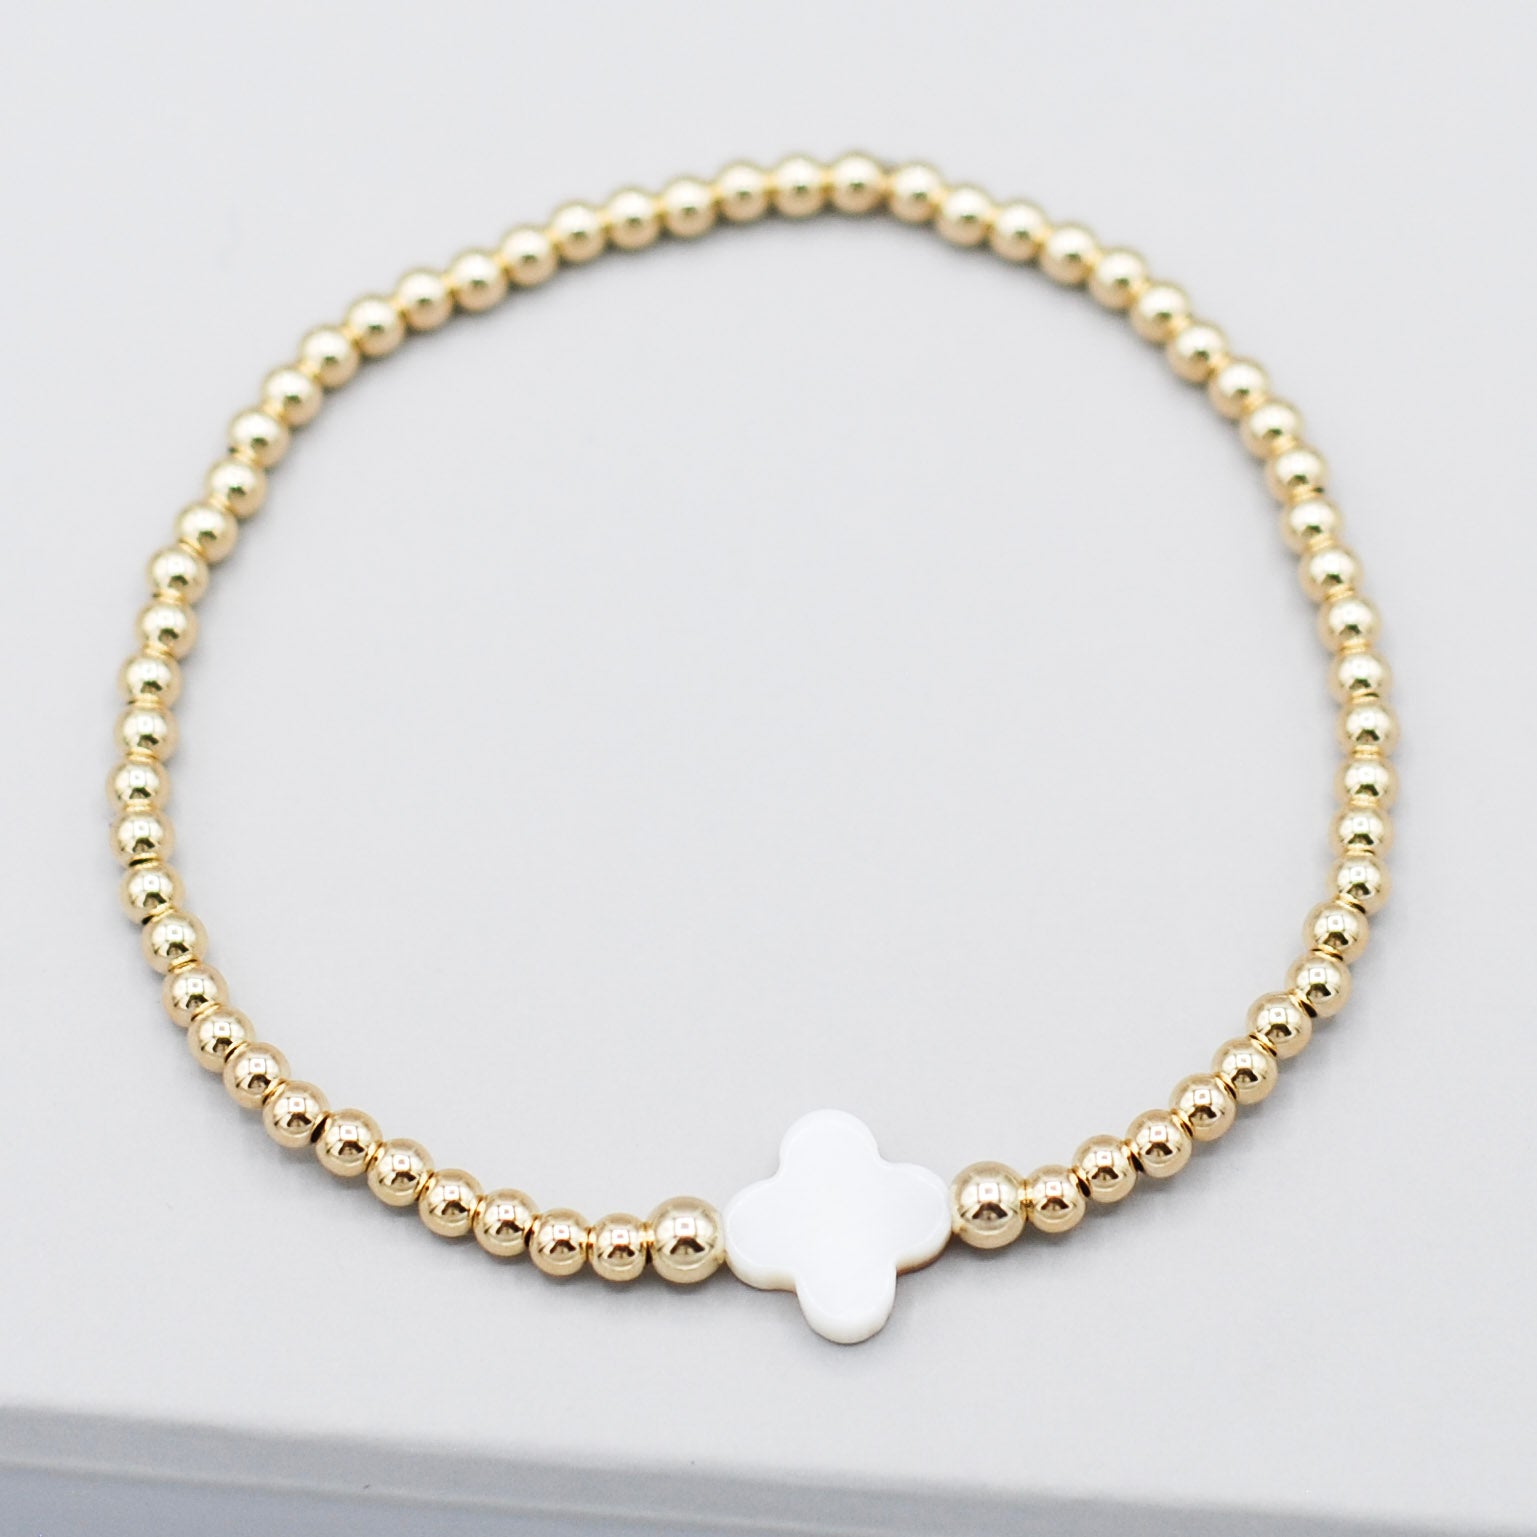 4mm 14k Gold Filled & Mother of Pearl Clover Bracelet